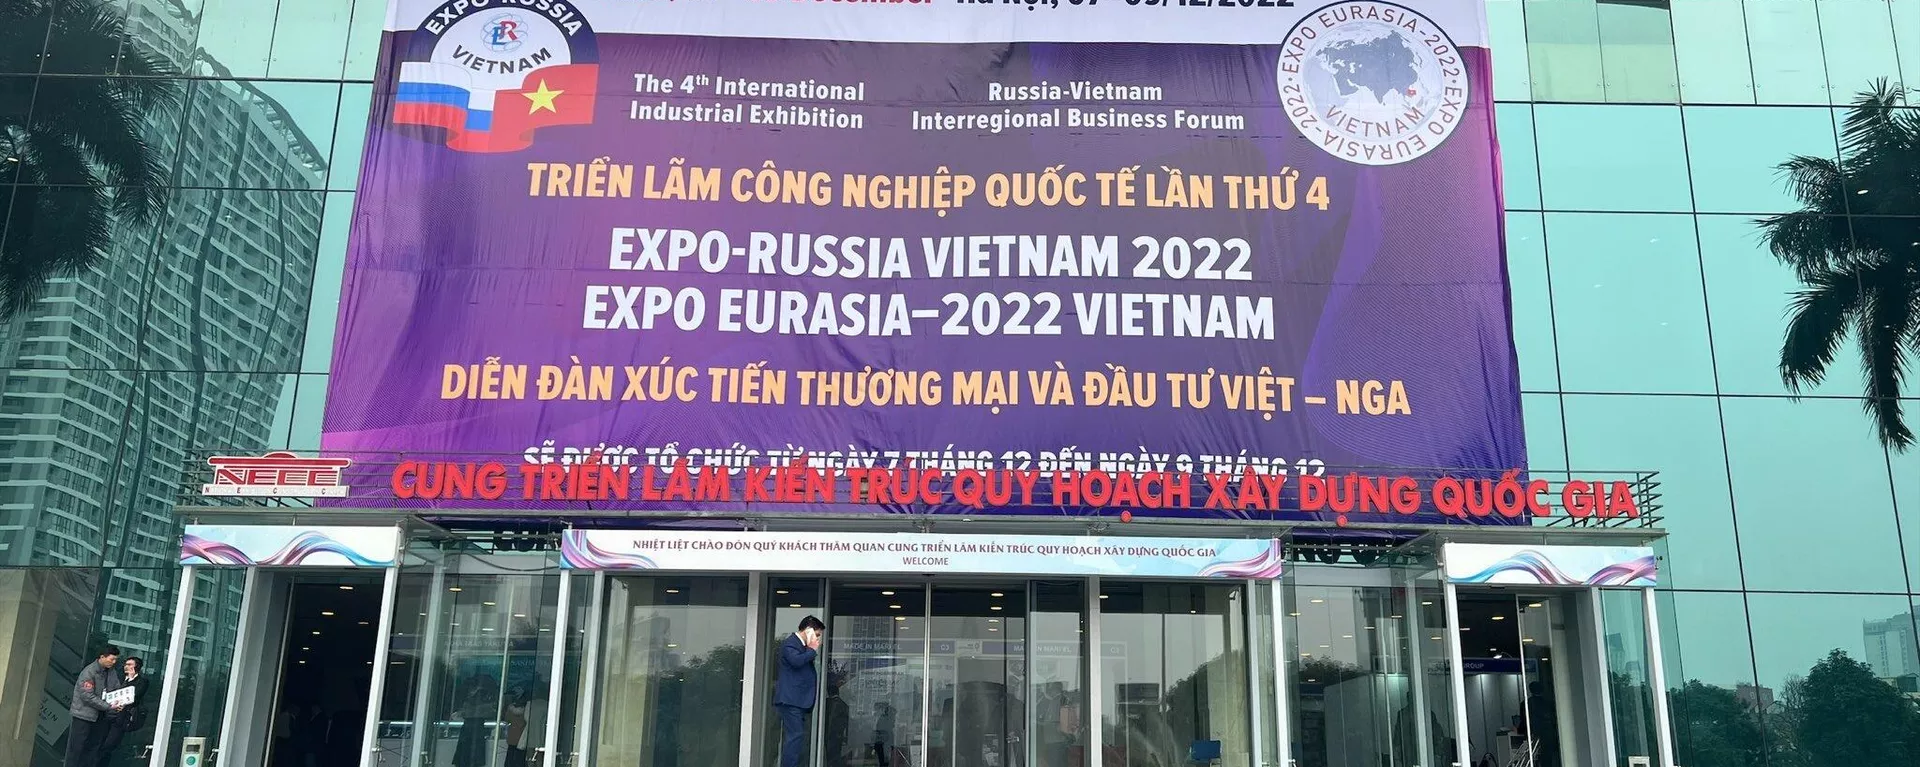 Triển lãm quốc tế Việt - Nga 2022 (EXPO-RUSSIA VIETNAM 2022) - Sputnik Việt Nam, 1920, 07.12.2022